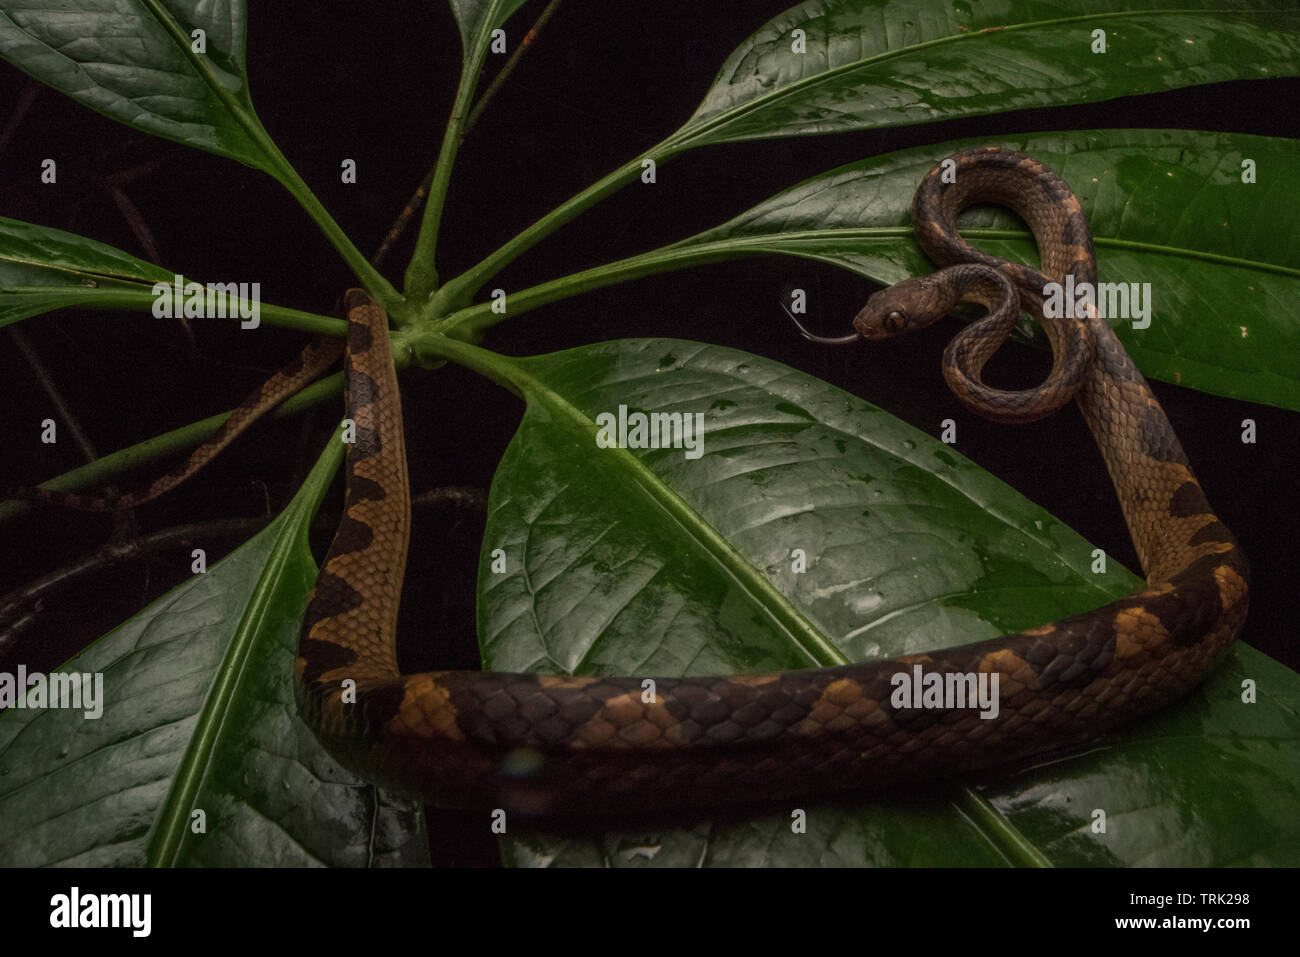 Eine cat-eyed snake (Leptodeira septentrionalis) auf ein Werk in Ecuadors Yasuni Nationalpark in den Amazonas Regenwald aufgewickelt. Stockfoto